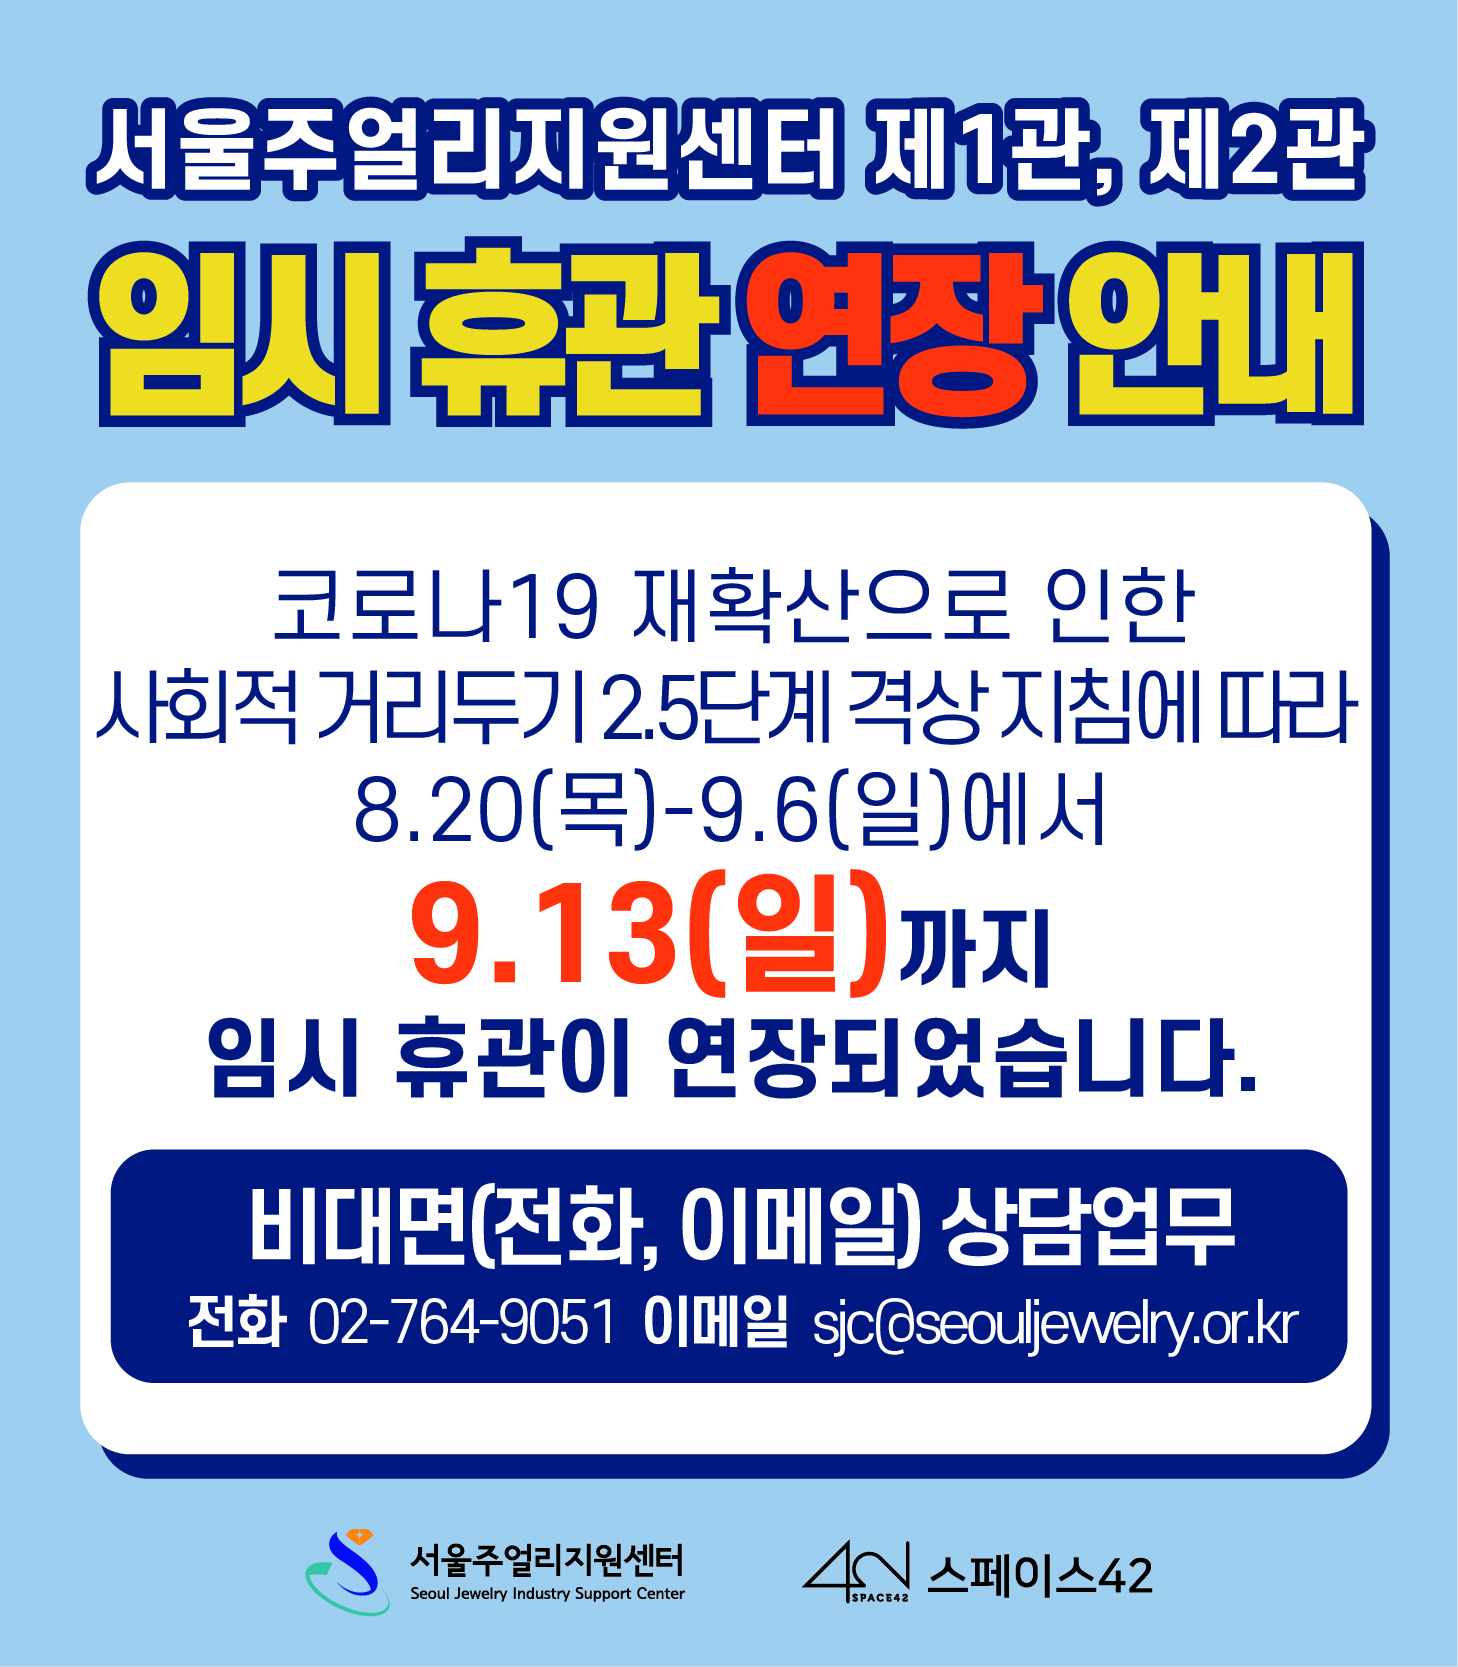 서울주얼리지원센터 제1관, 제2관 임시 휴관 연장 안내(~9월 13일까지)